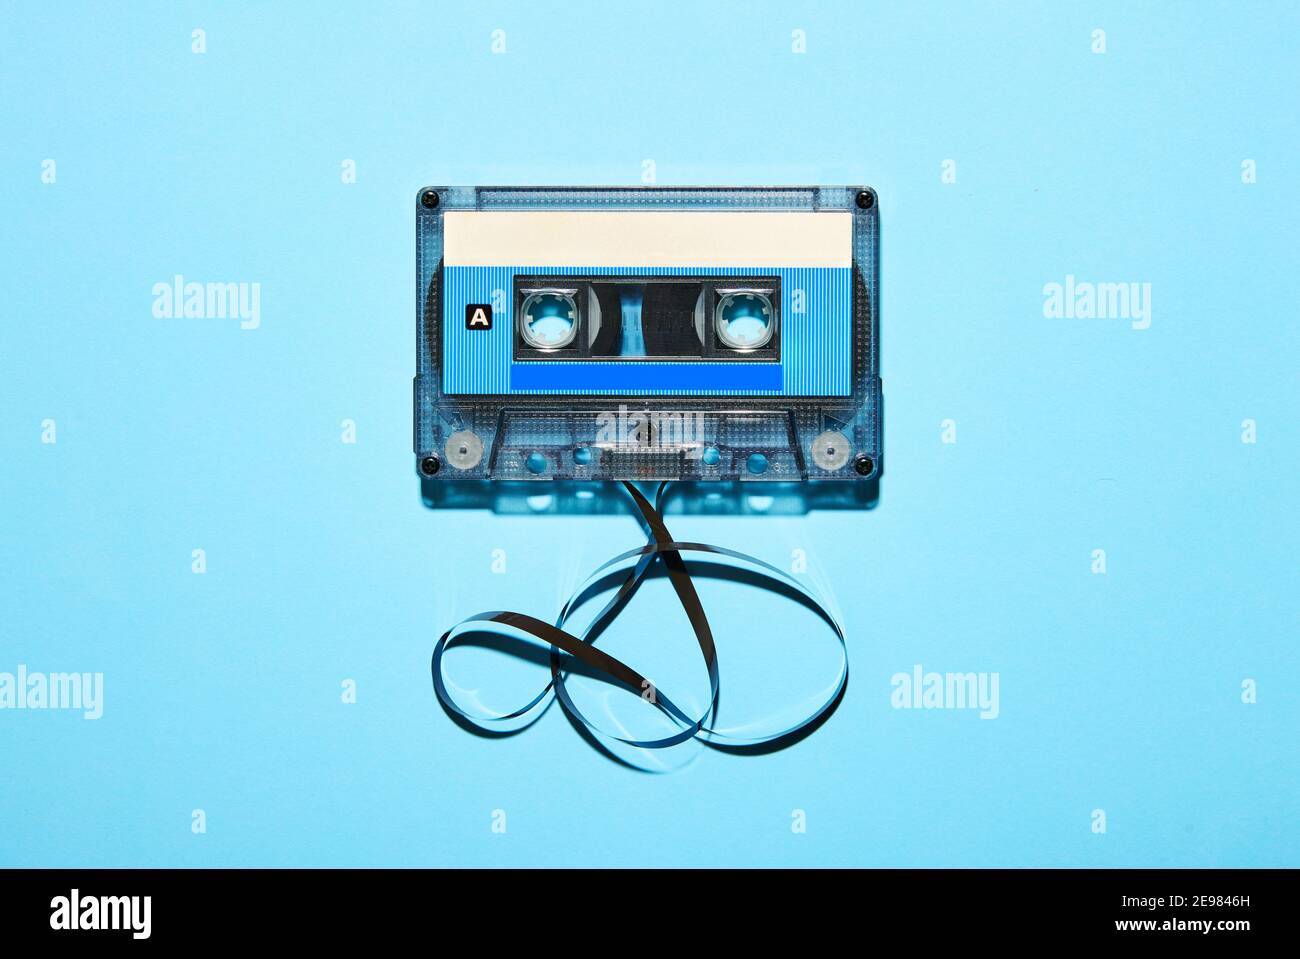 Vue de dessus de la cassette audio compacte en plastique ancienne d'époque avec ruban emmêlé isolé sur fond bleu Banque D'Images